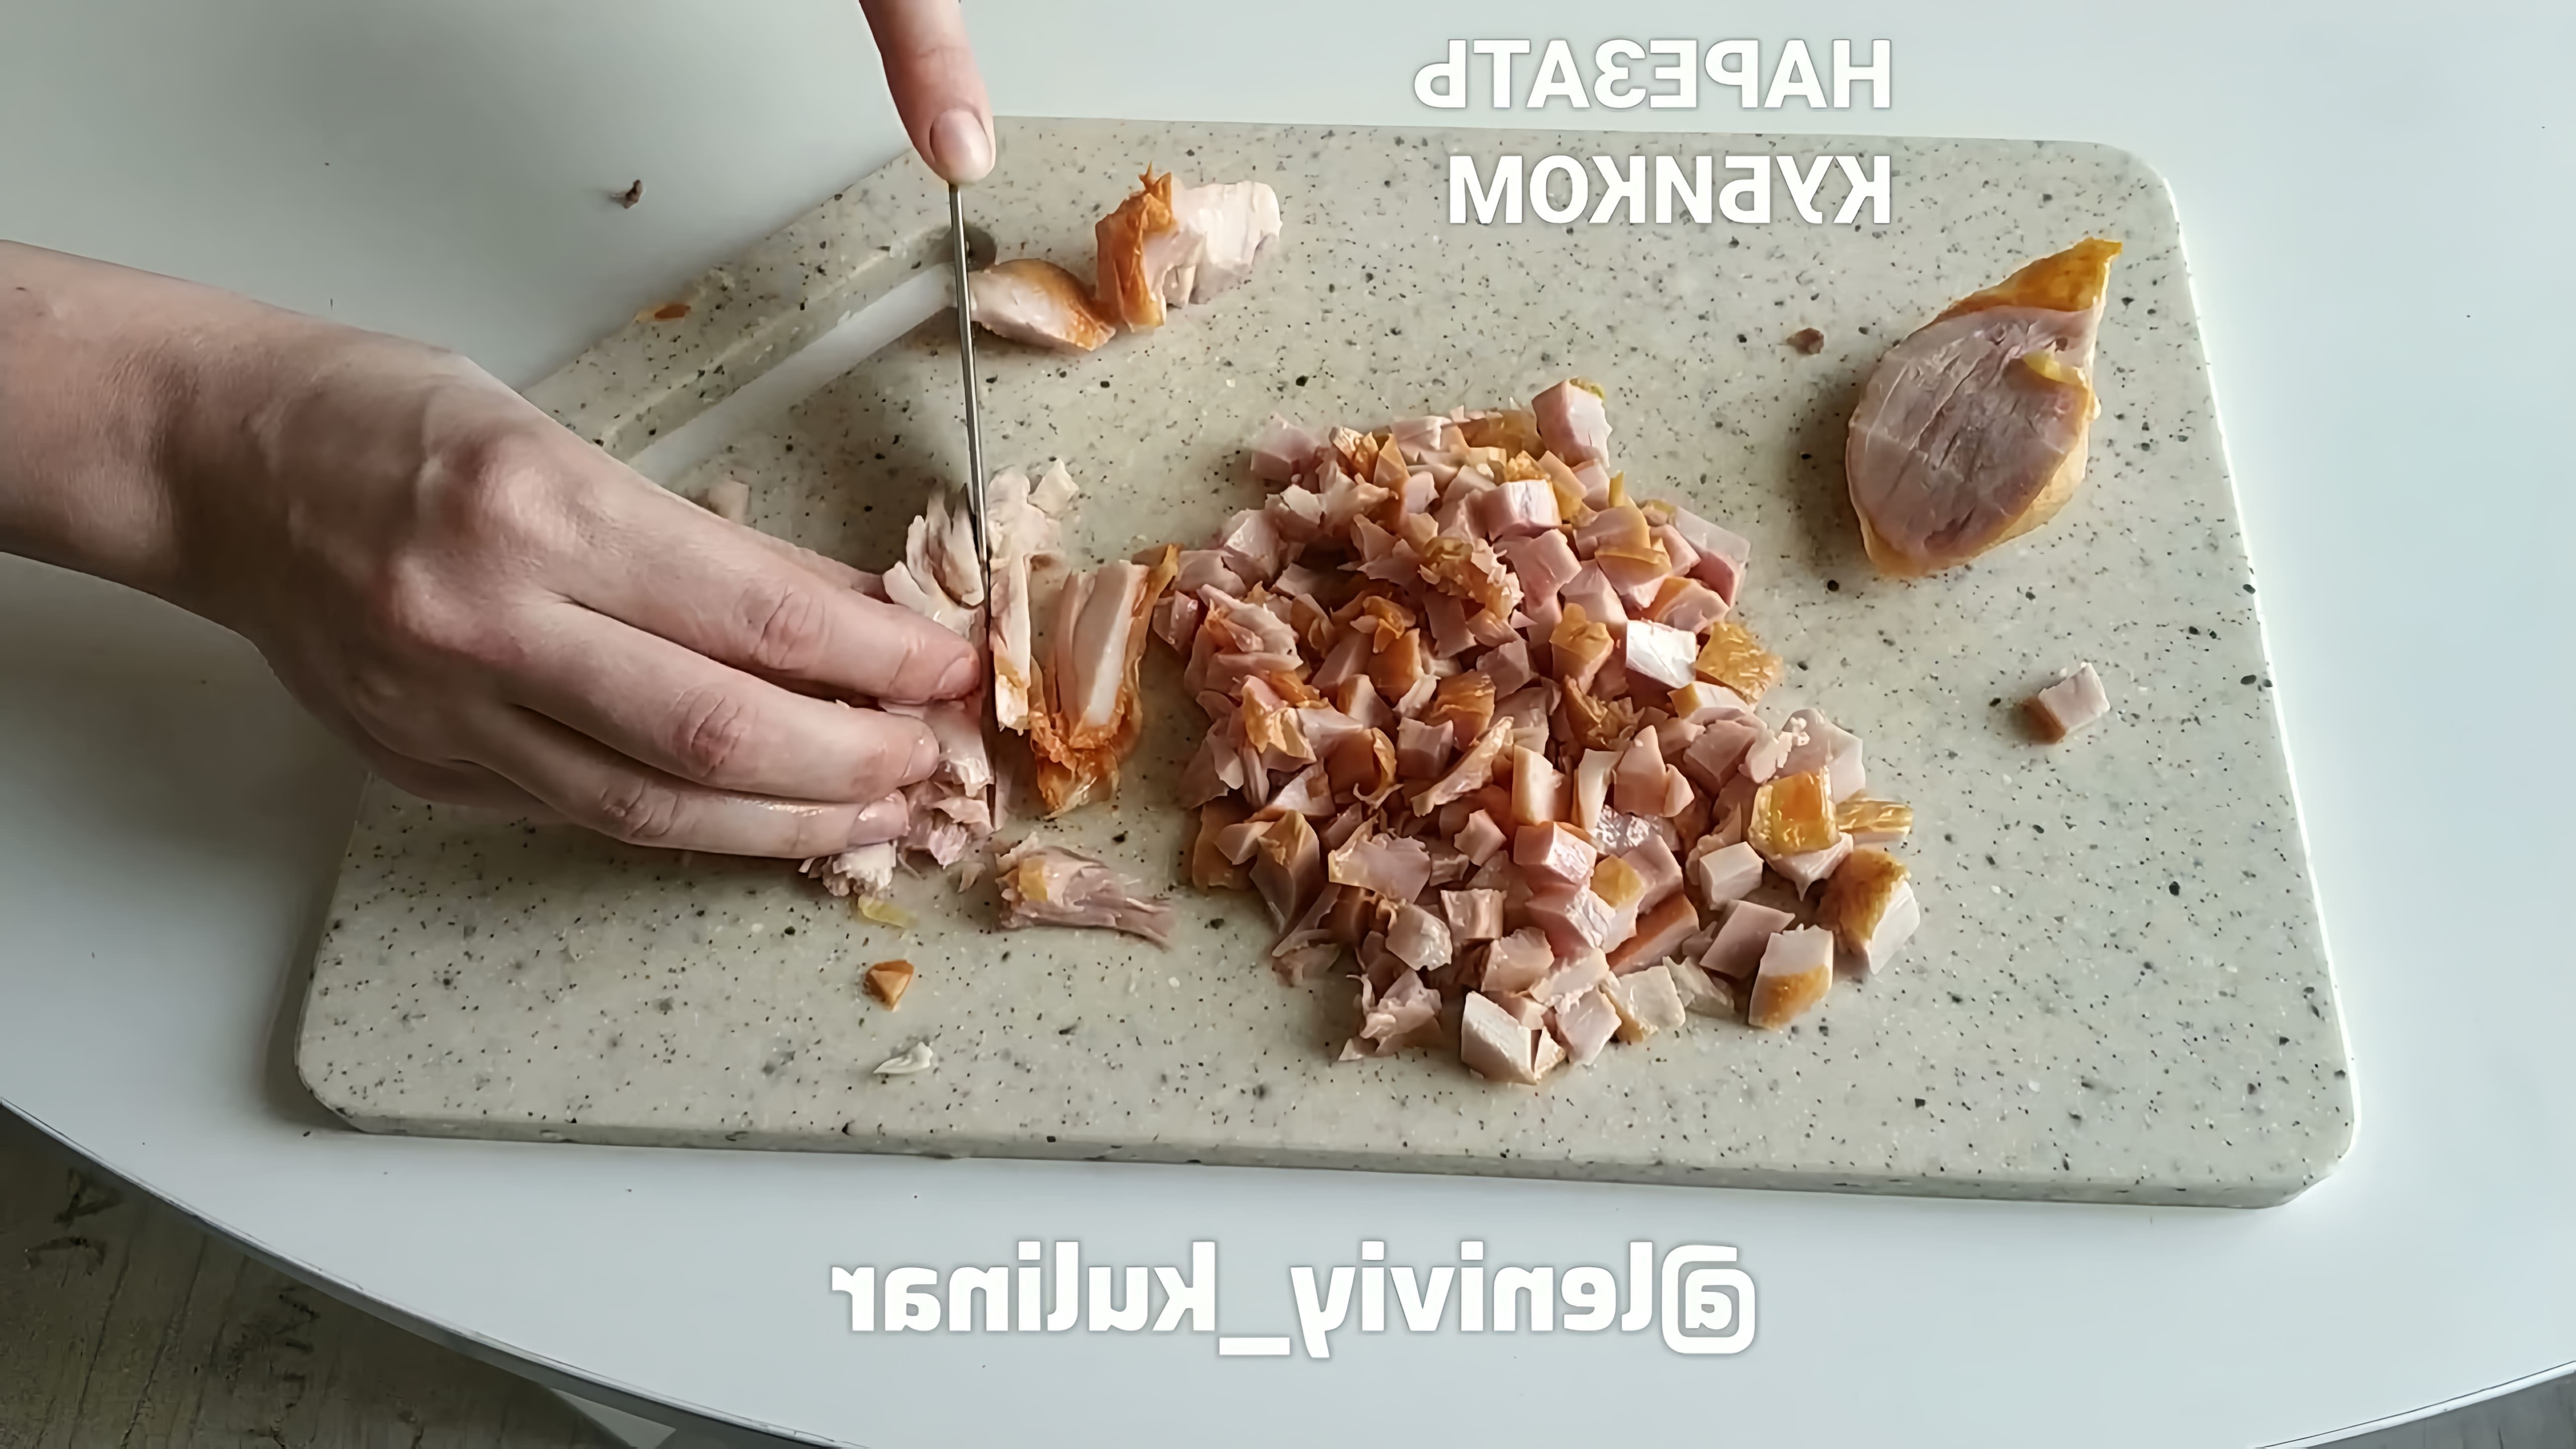 В этом видео демонстрируется рецепт вкусного салата с копченым окорочком